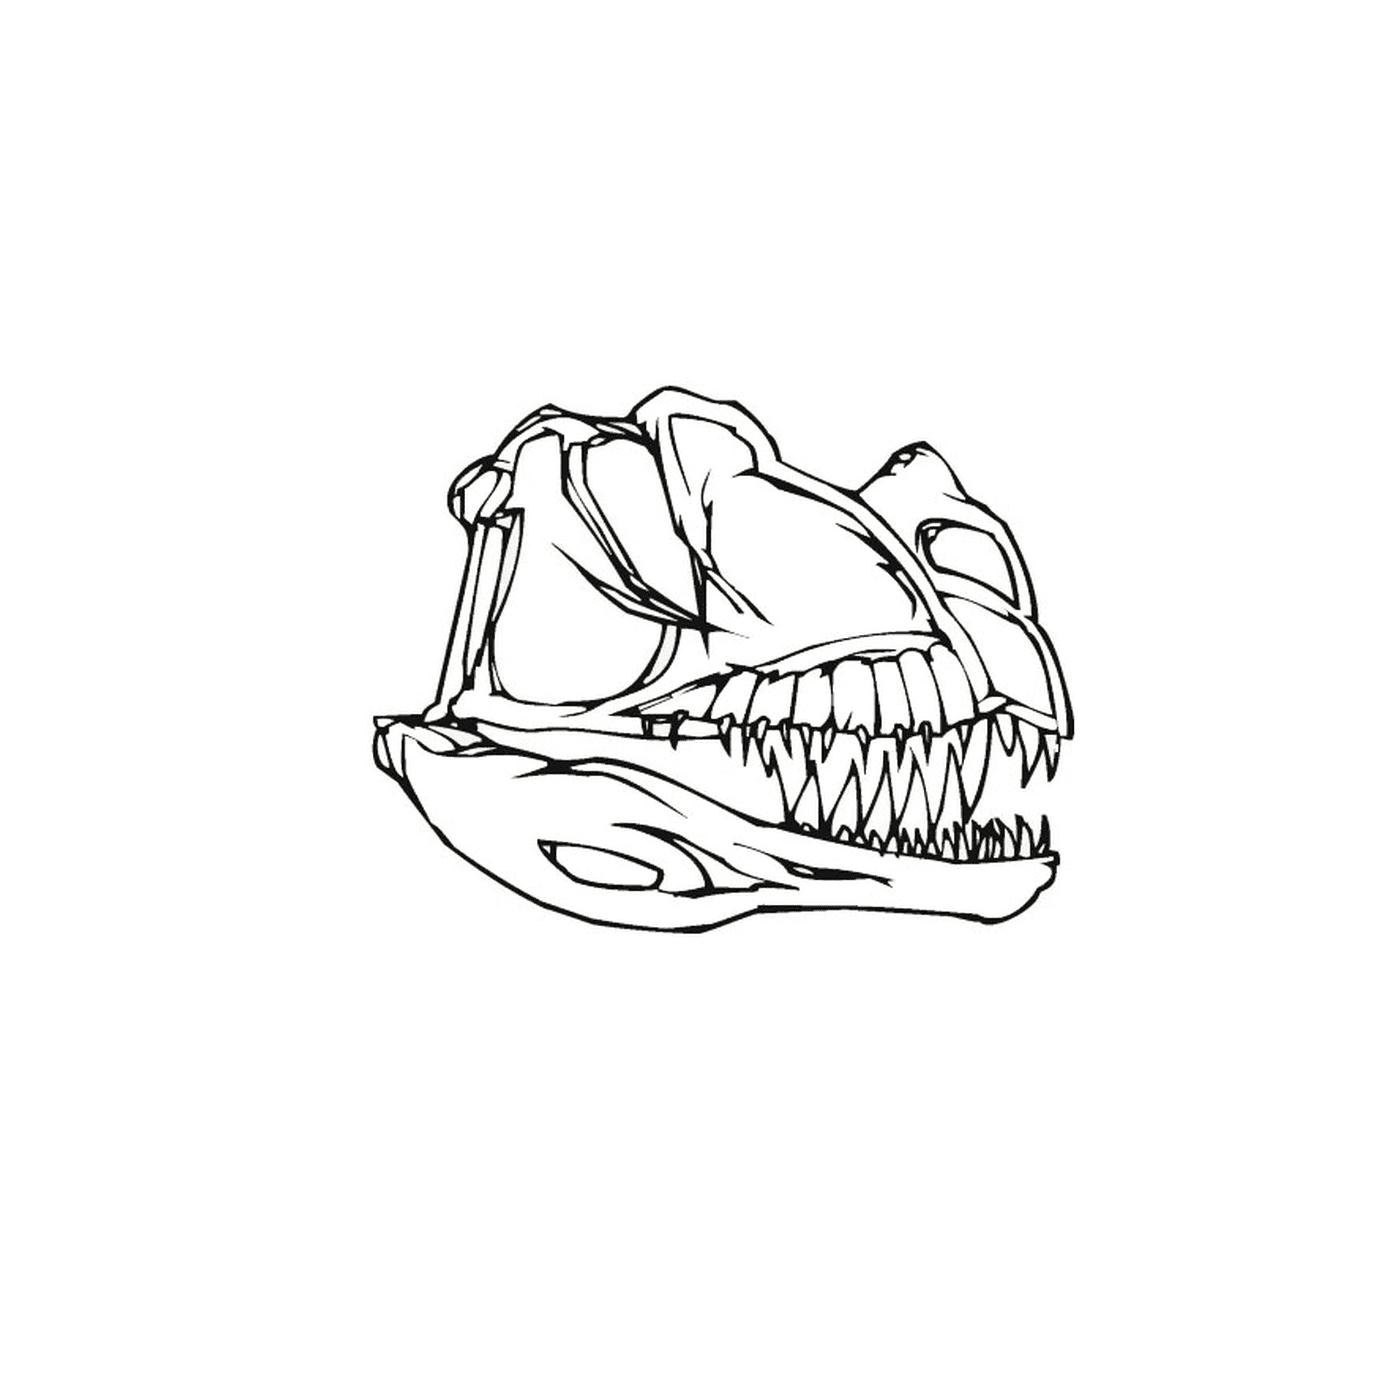  El cráneo de un dinosaurio con dientes 